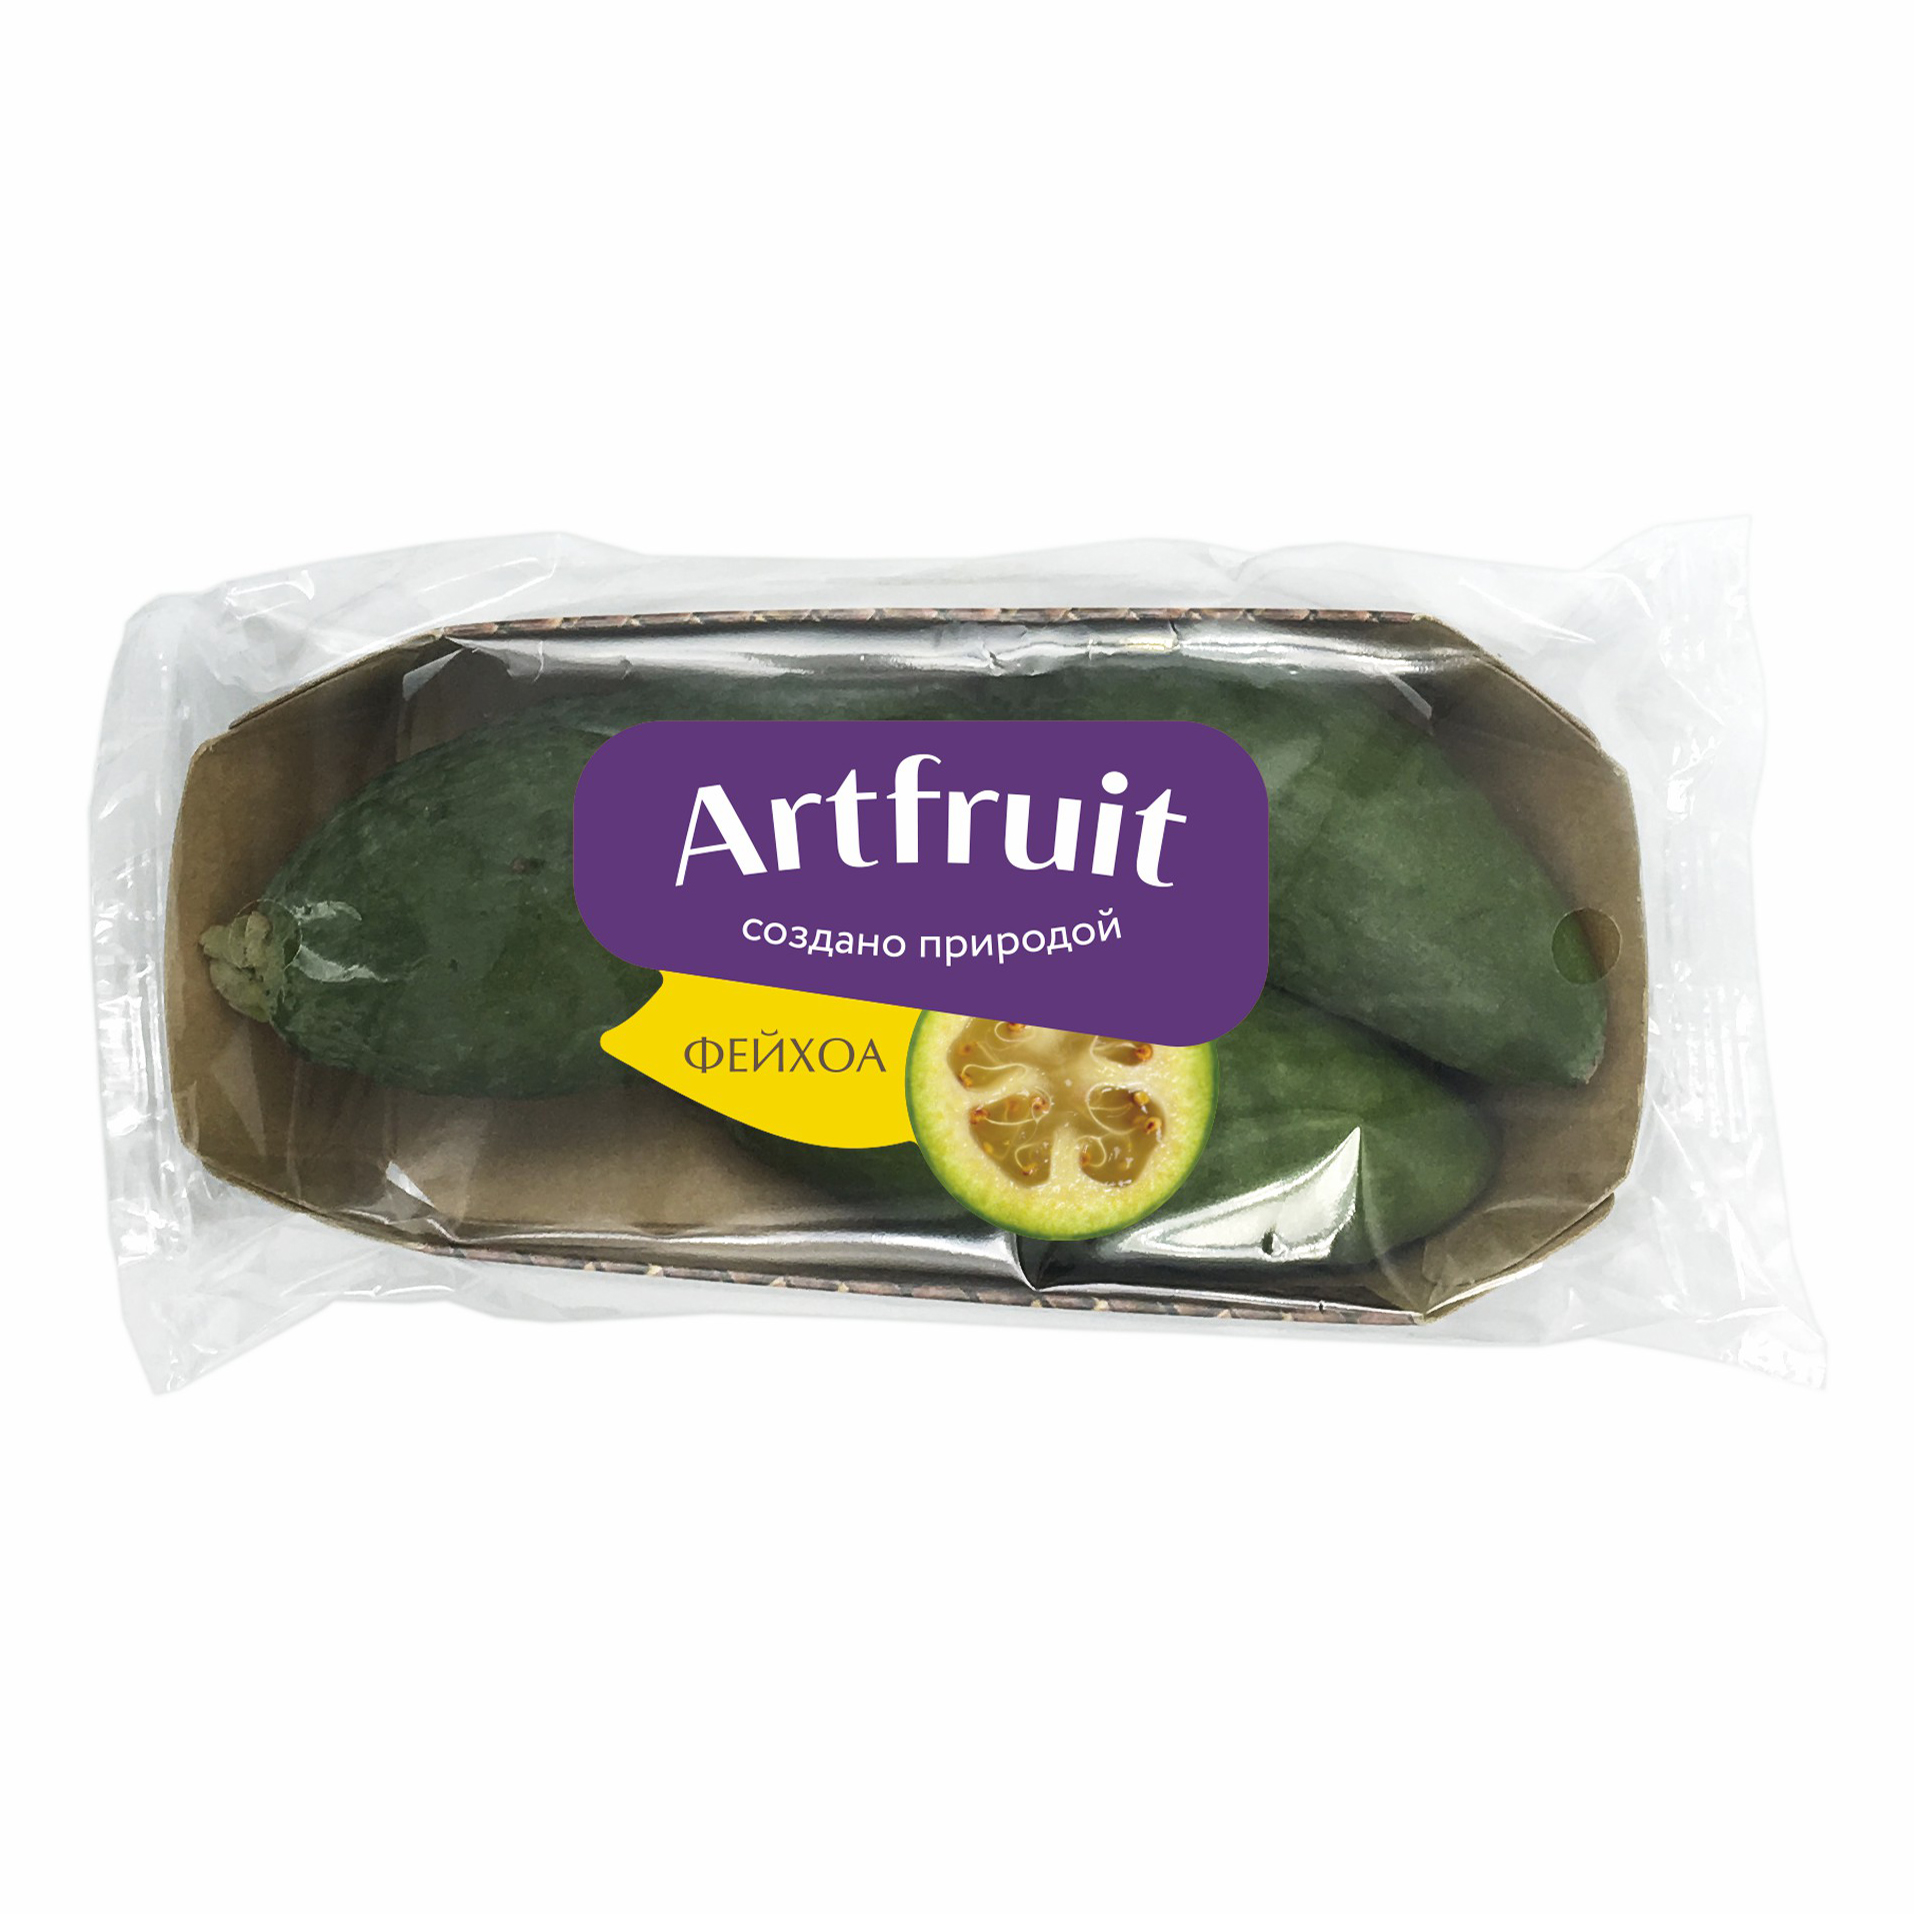 Манго упаковка artfruit